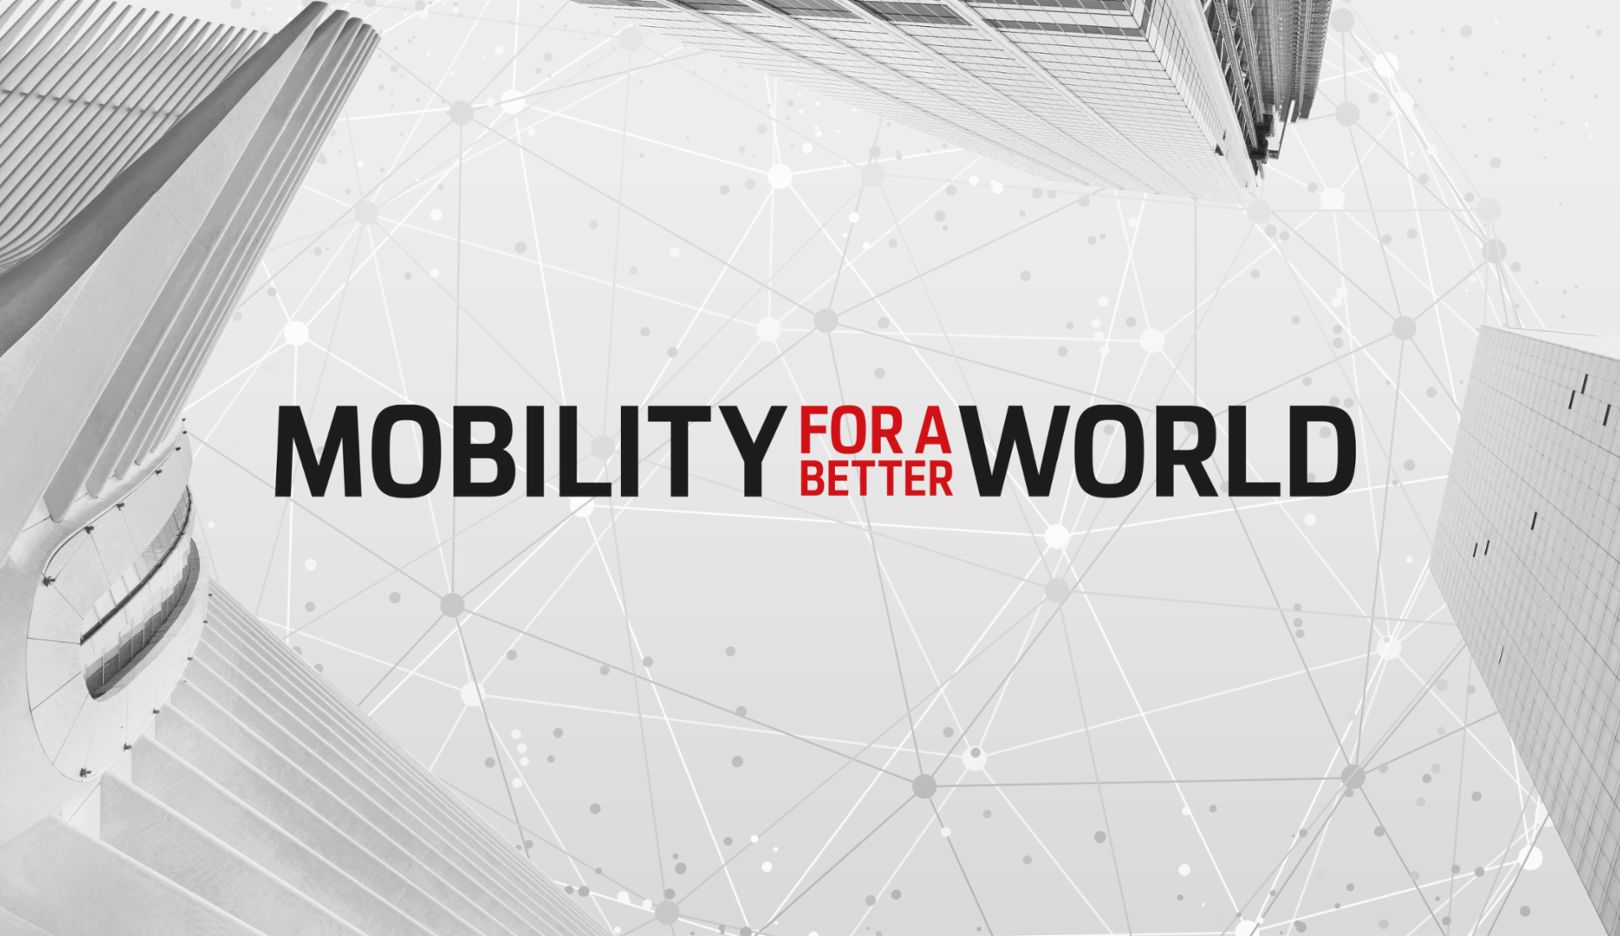  Mobility for a better world - jetzt Projekte einreichen!